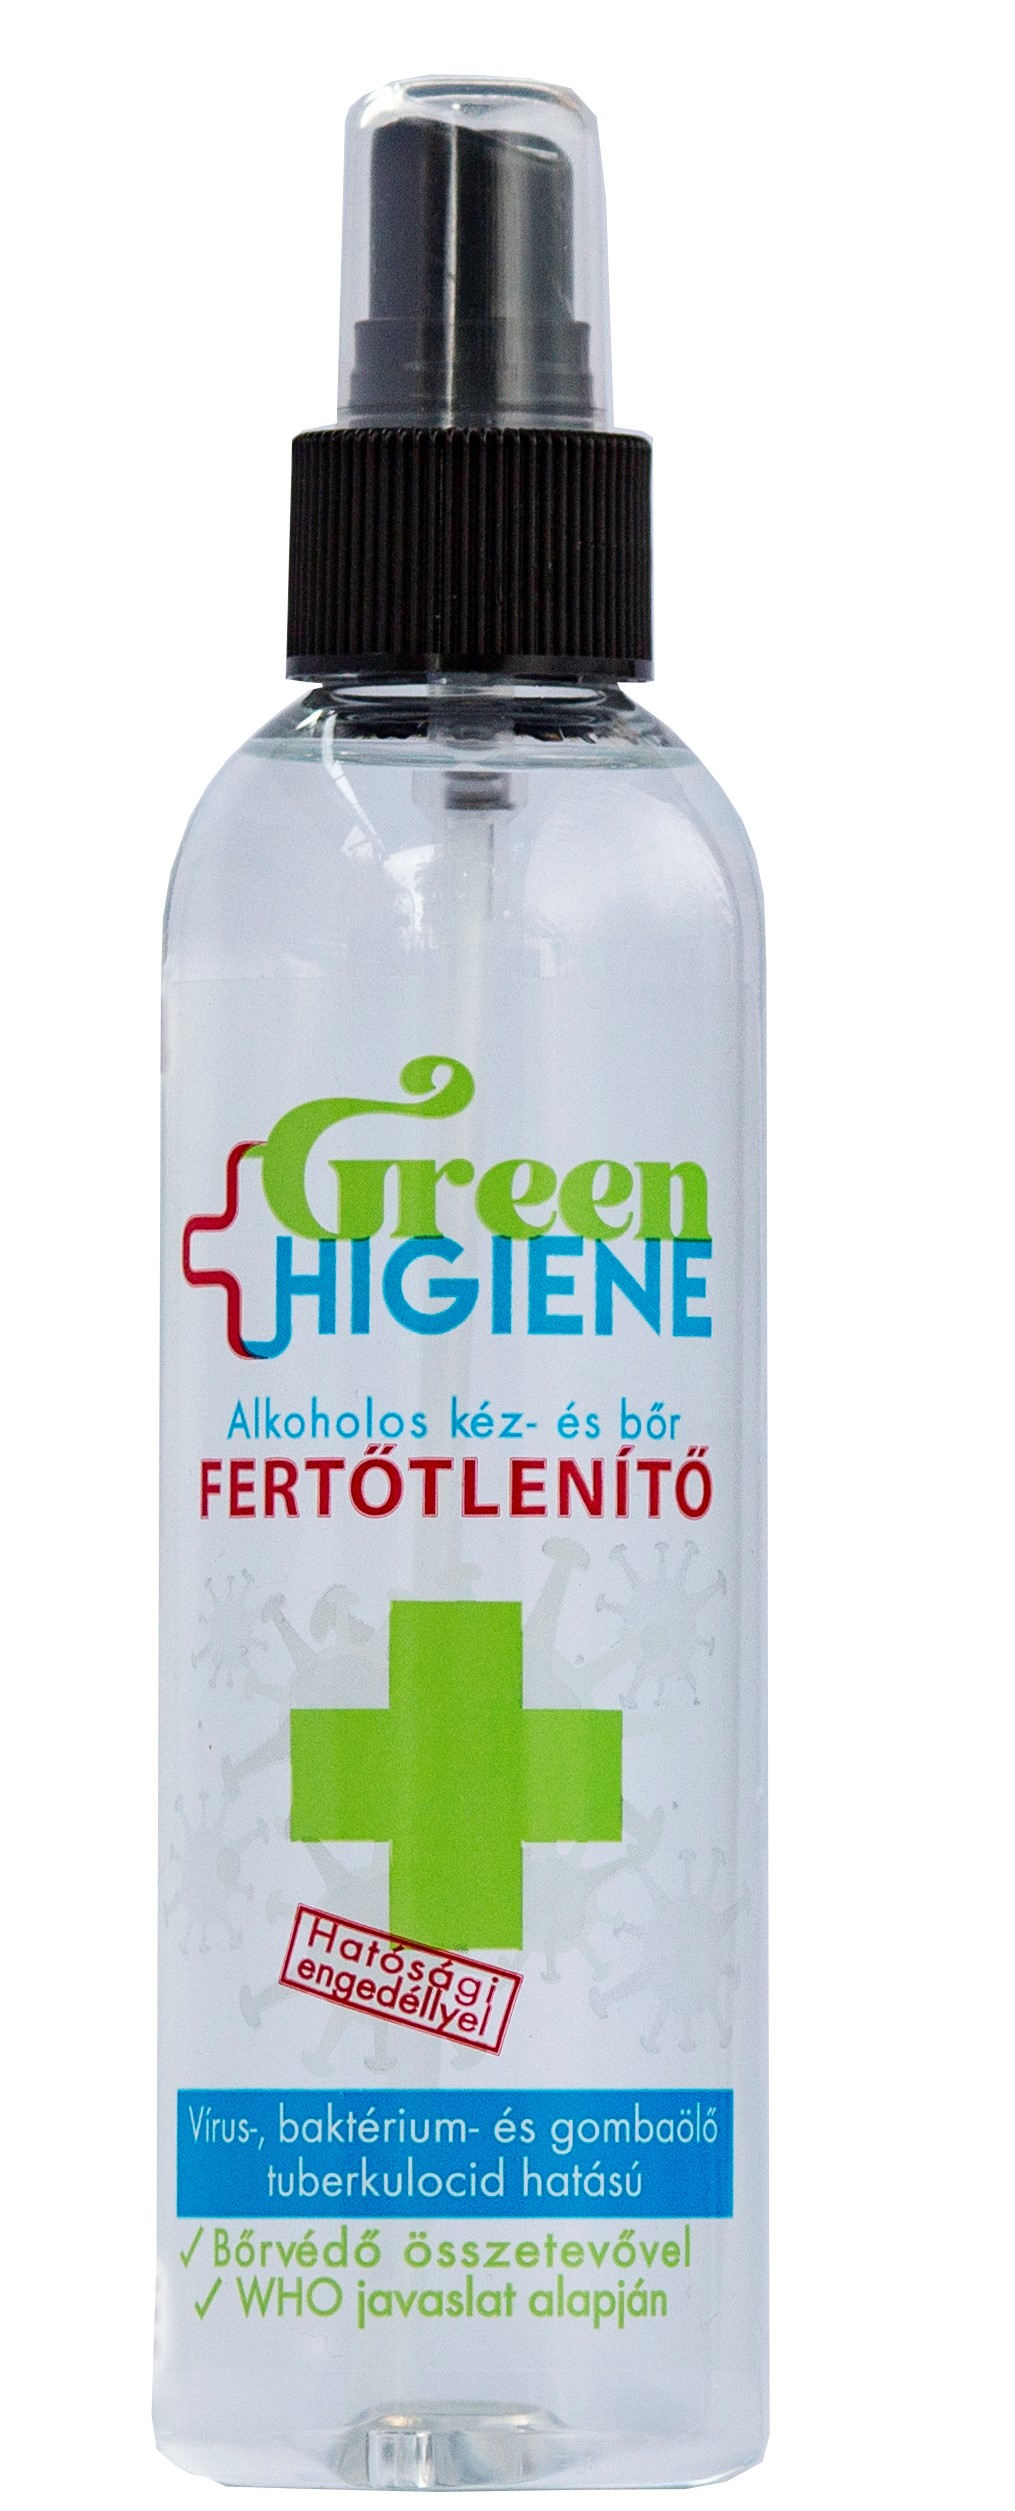 *Green Higiene Alkoholos Kéz- és bőrfertőtlenítő folyadék szórófejjel 200 ml